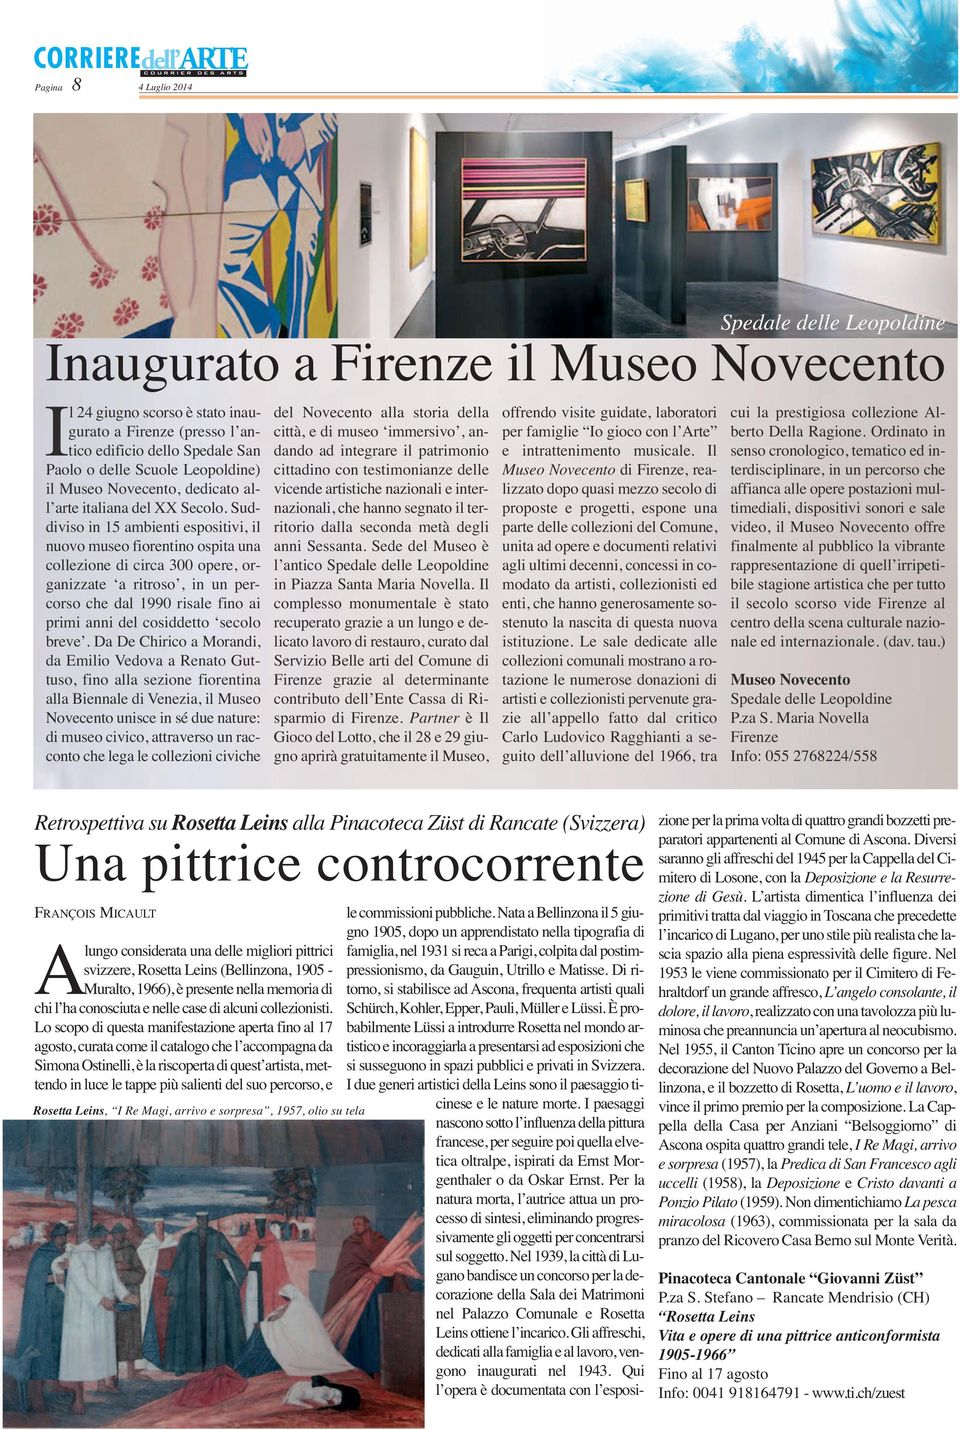 Suddiviso in 15 ambienti espositivi, il nuovo museo fiorentino ospita una collezione di circa 300 opere, organizzate a ritroso, in un percorso che dal 1990 risale fino ai primi anni del cosiddetto